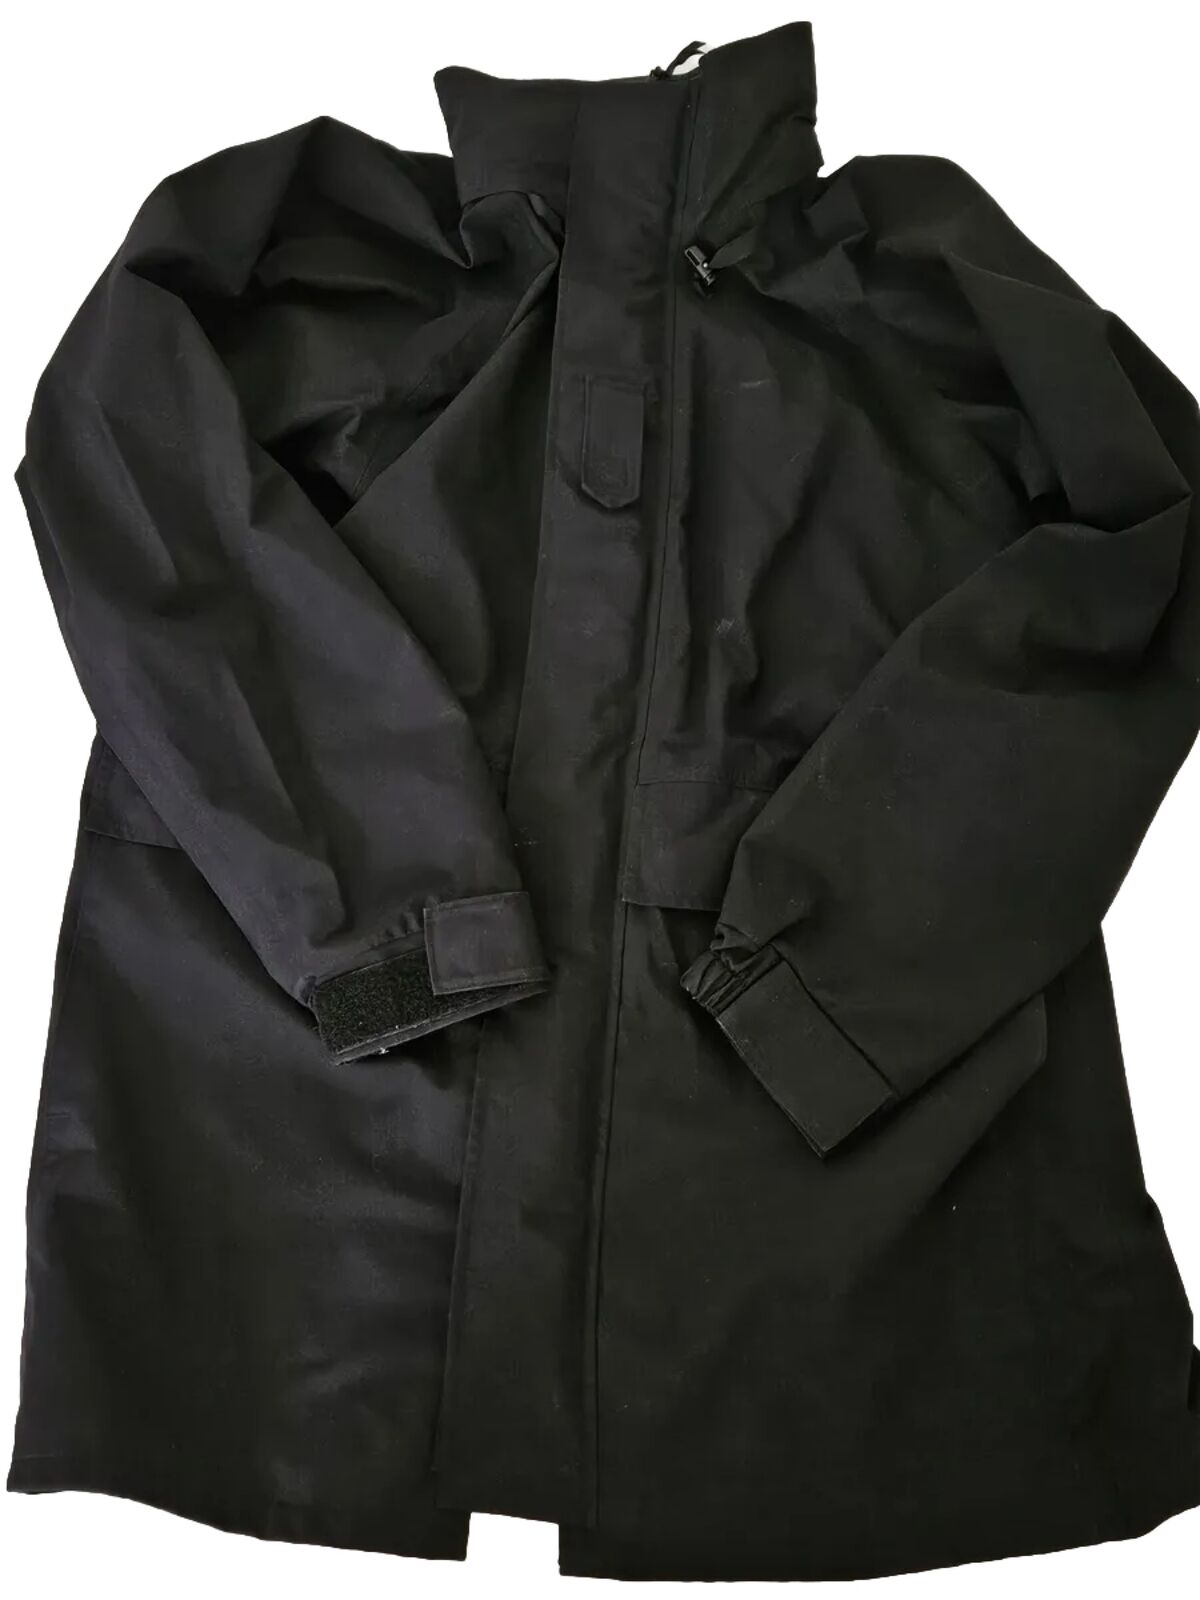 US Navy Cold Weather GoreTex Parka Black Medium XX-Long Jacket Hooded